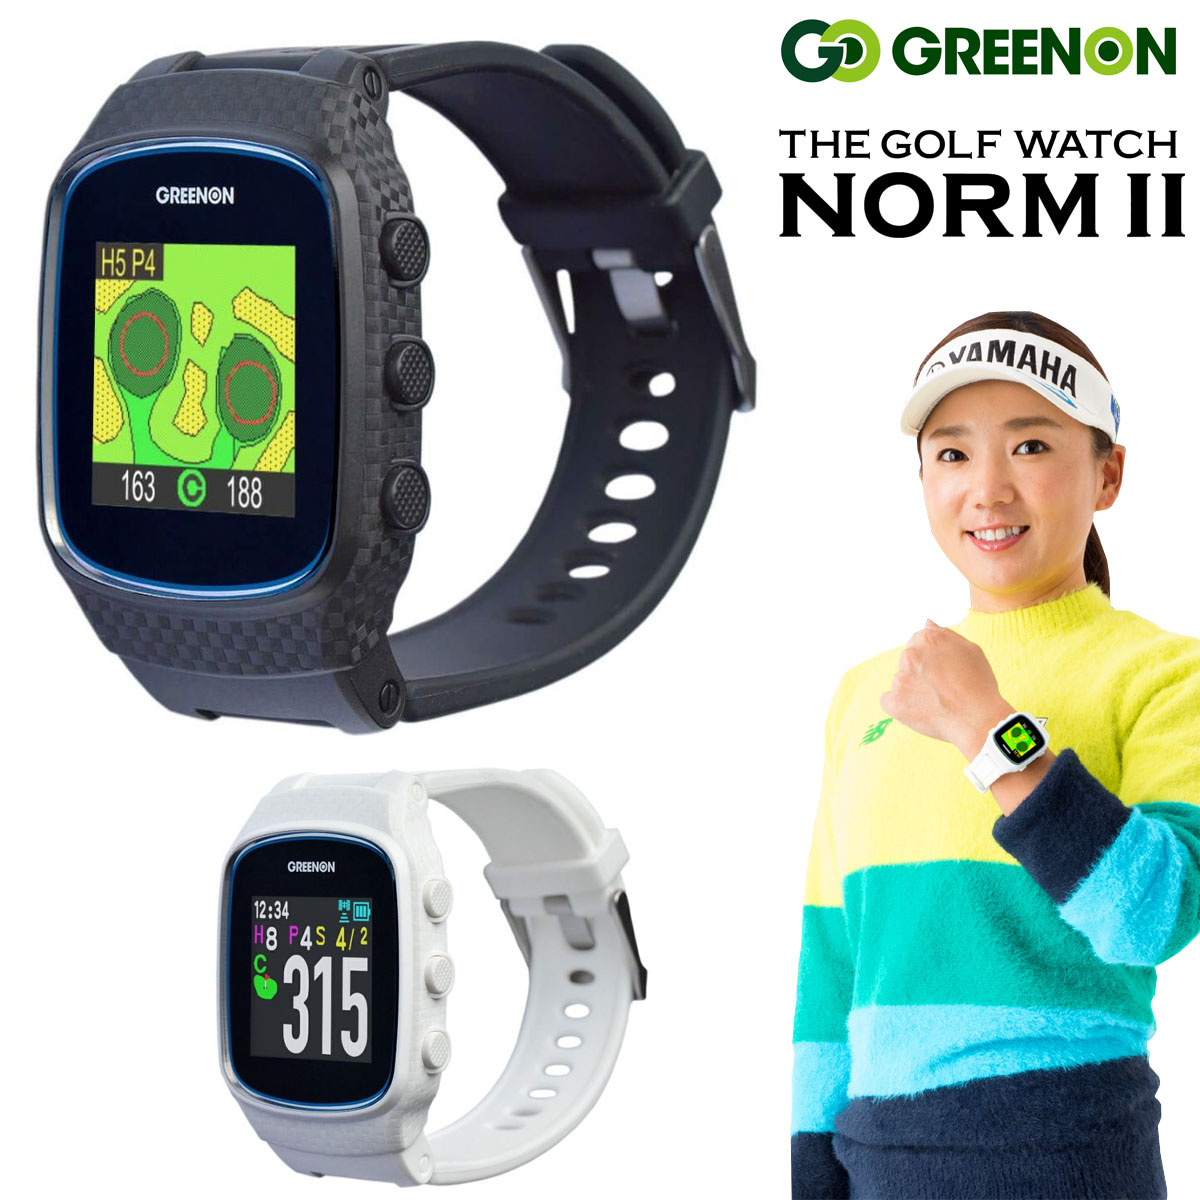 GreenOn(グリーンオン) MASA日本正規品 THE GOLF WATCH NORM II (ザ・ゴルフウォッチノルム2) 「みちびきL1S対応GPS距離測定器」【あす楽対応】